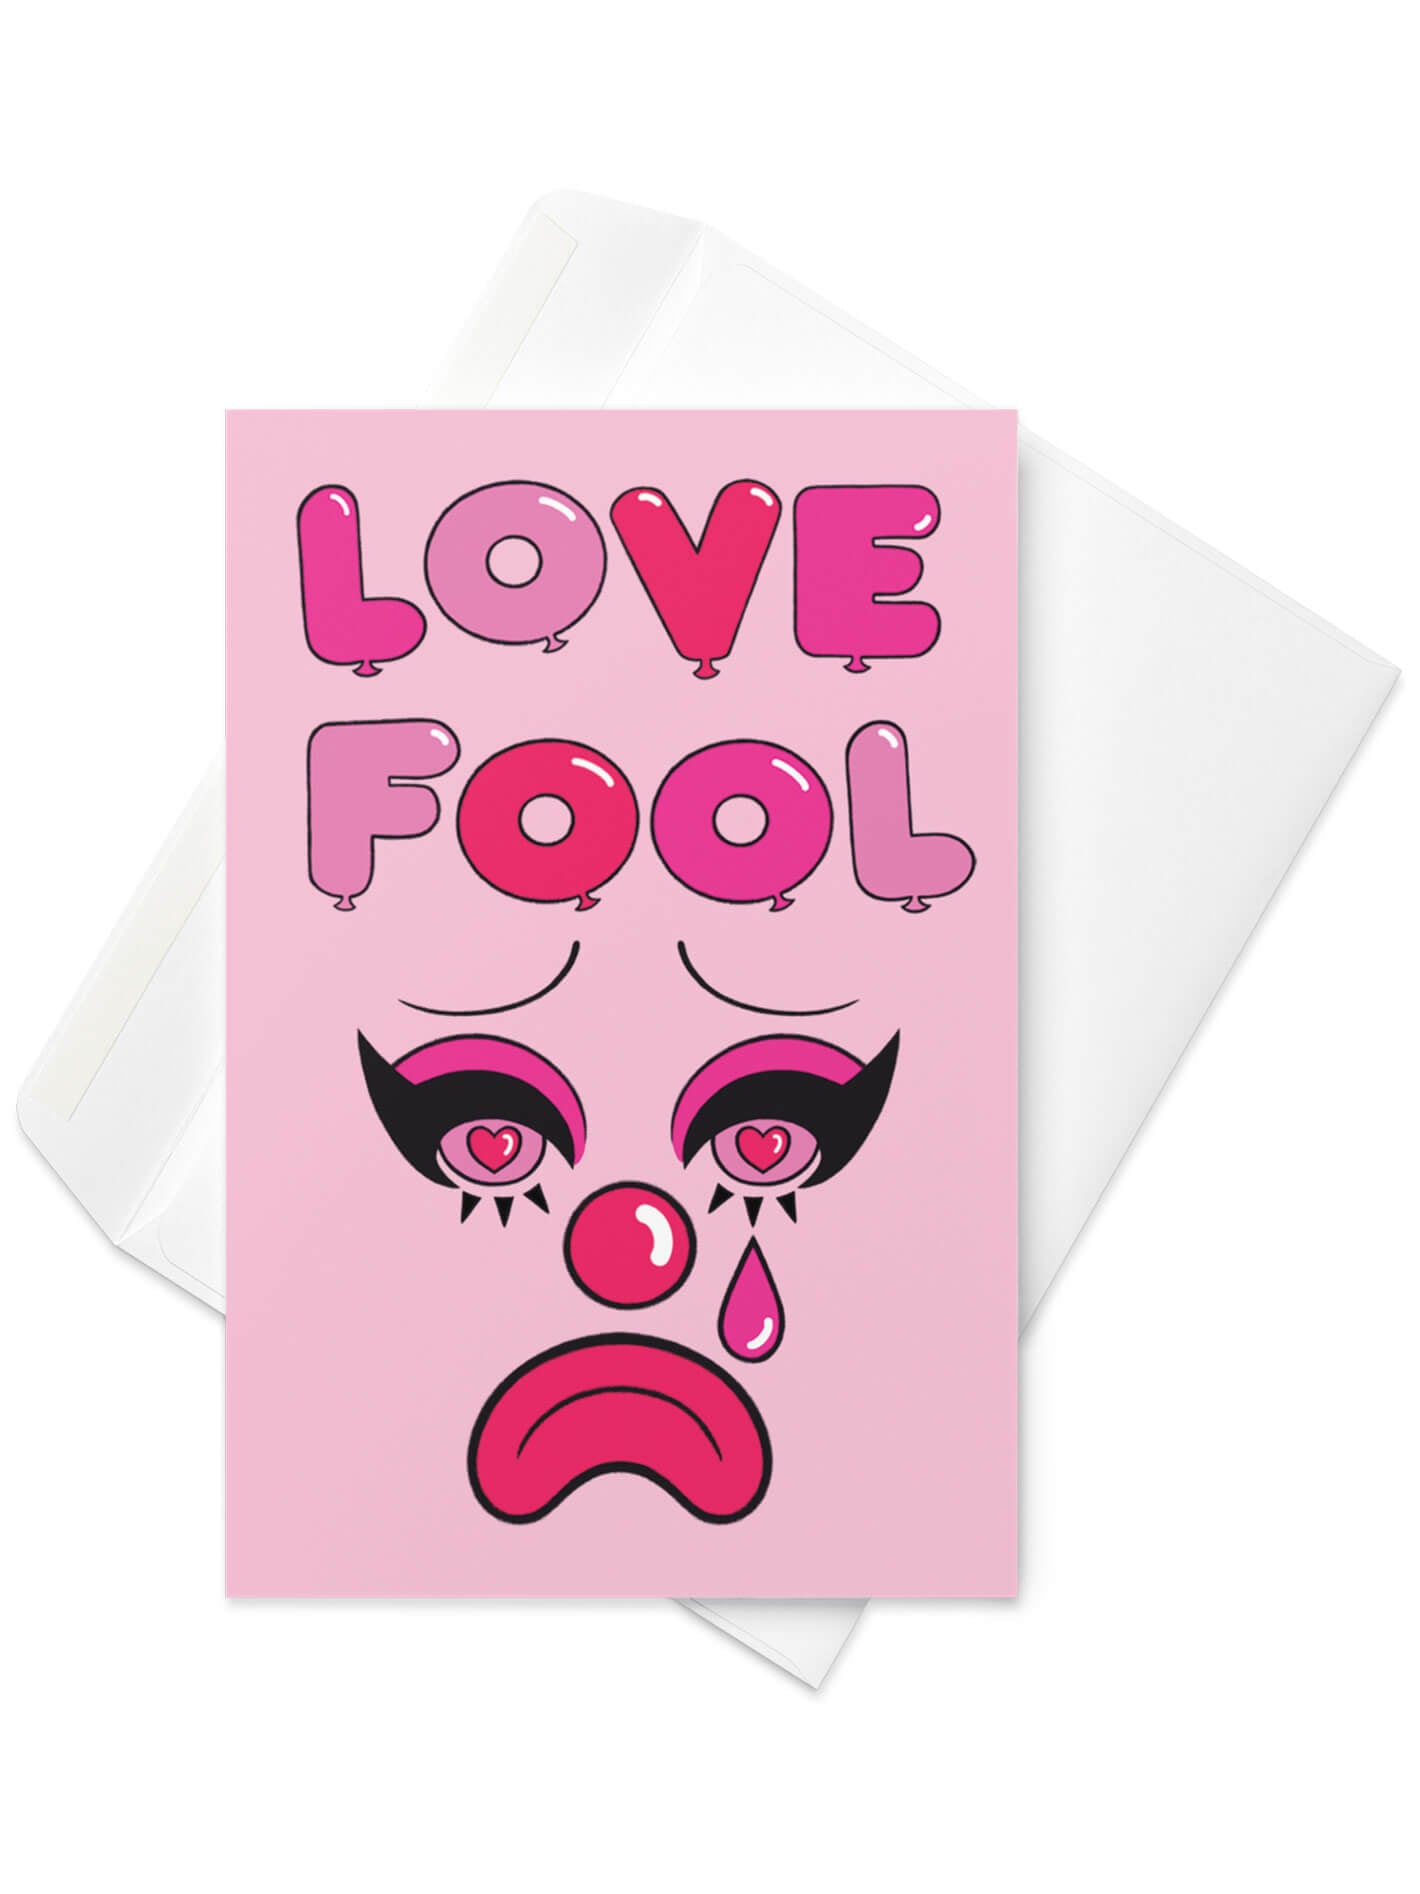 Love fool clown Valentines card.